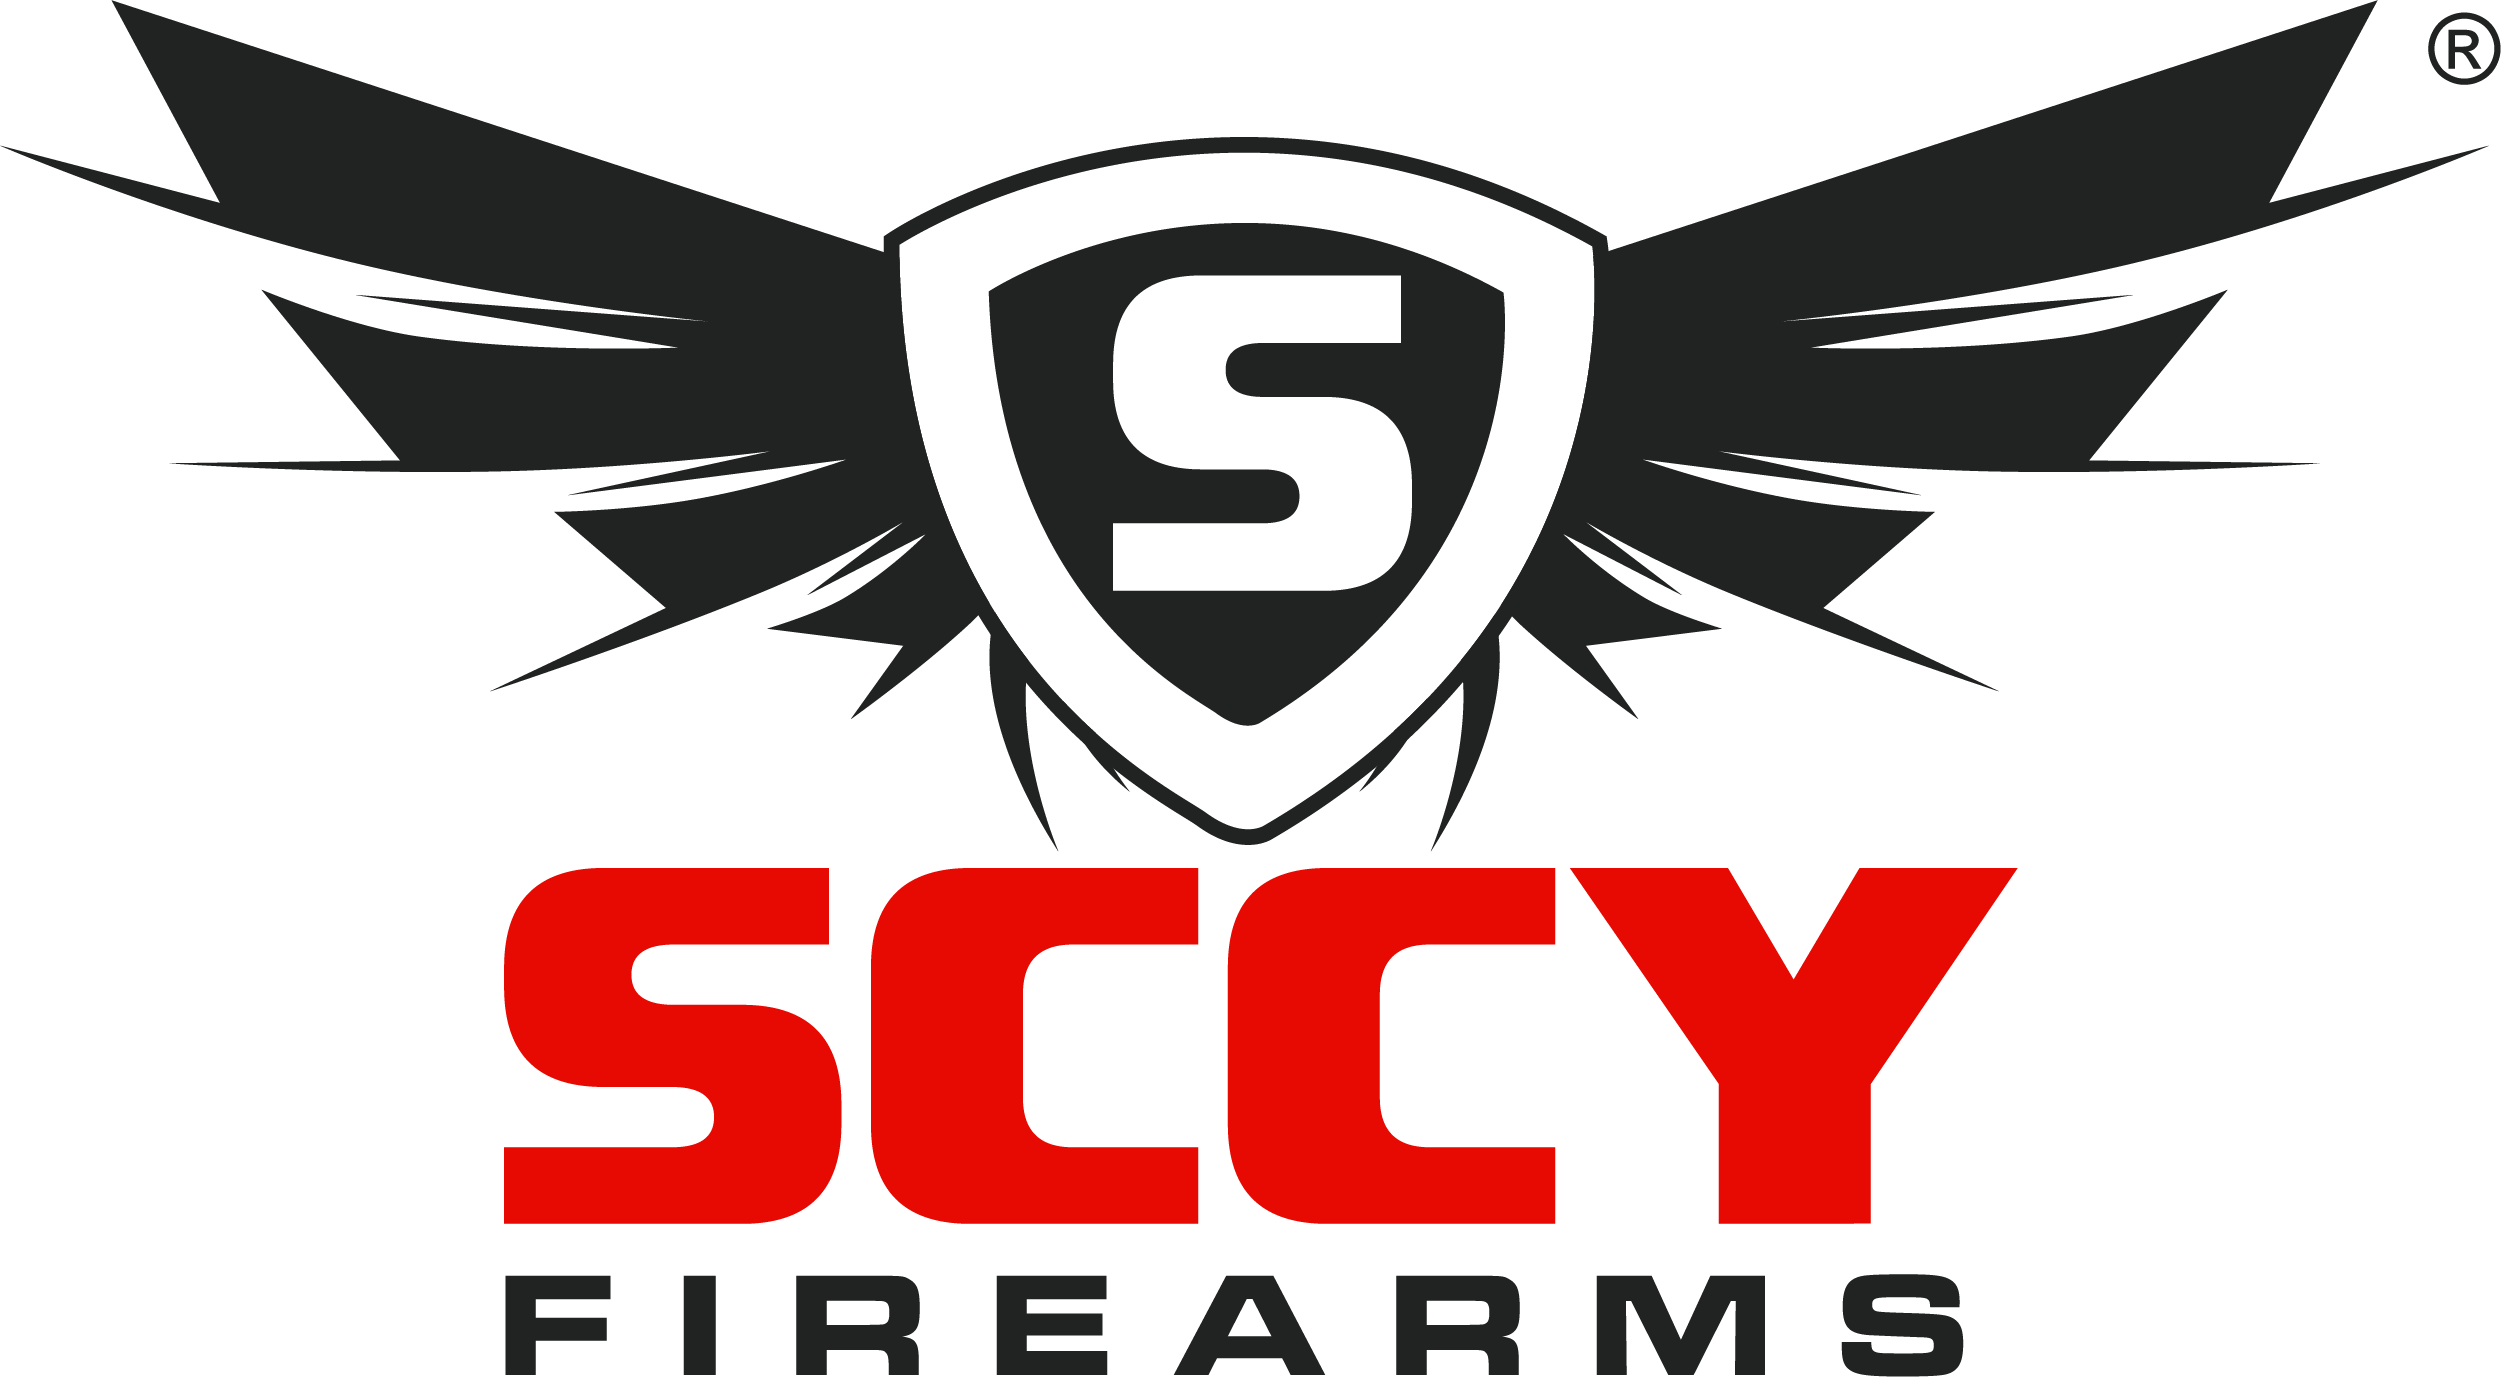 sccy.com